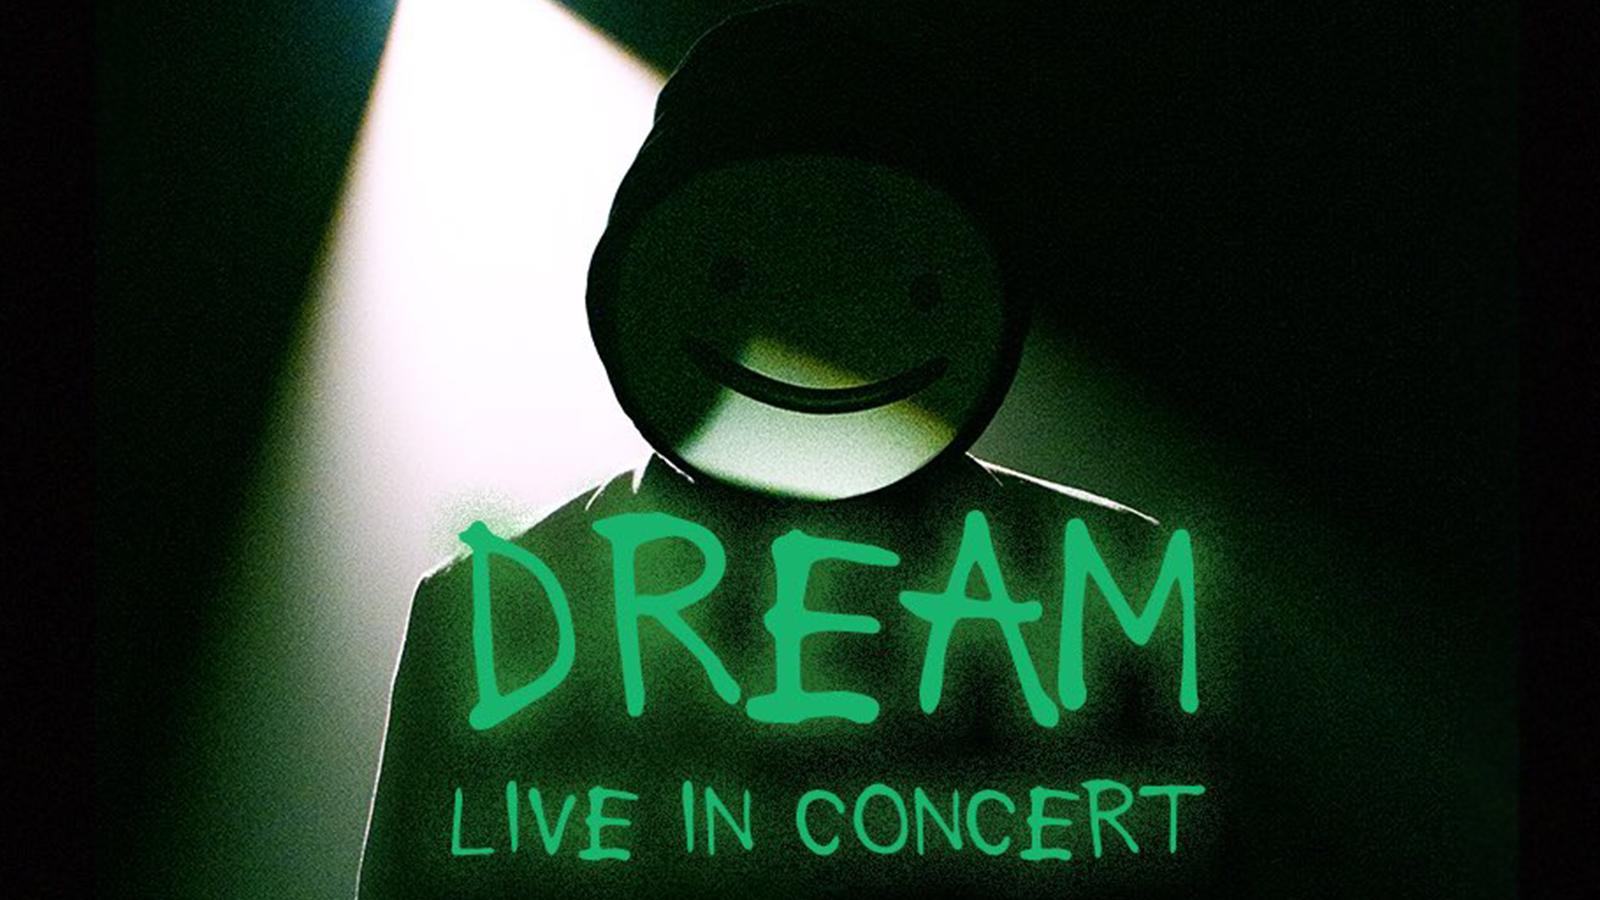 Dream Concert Tour Dates Info 